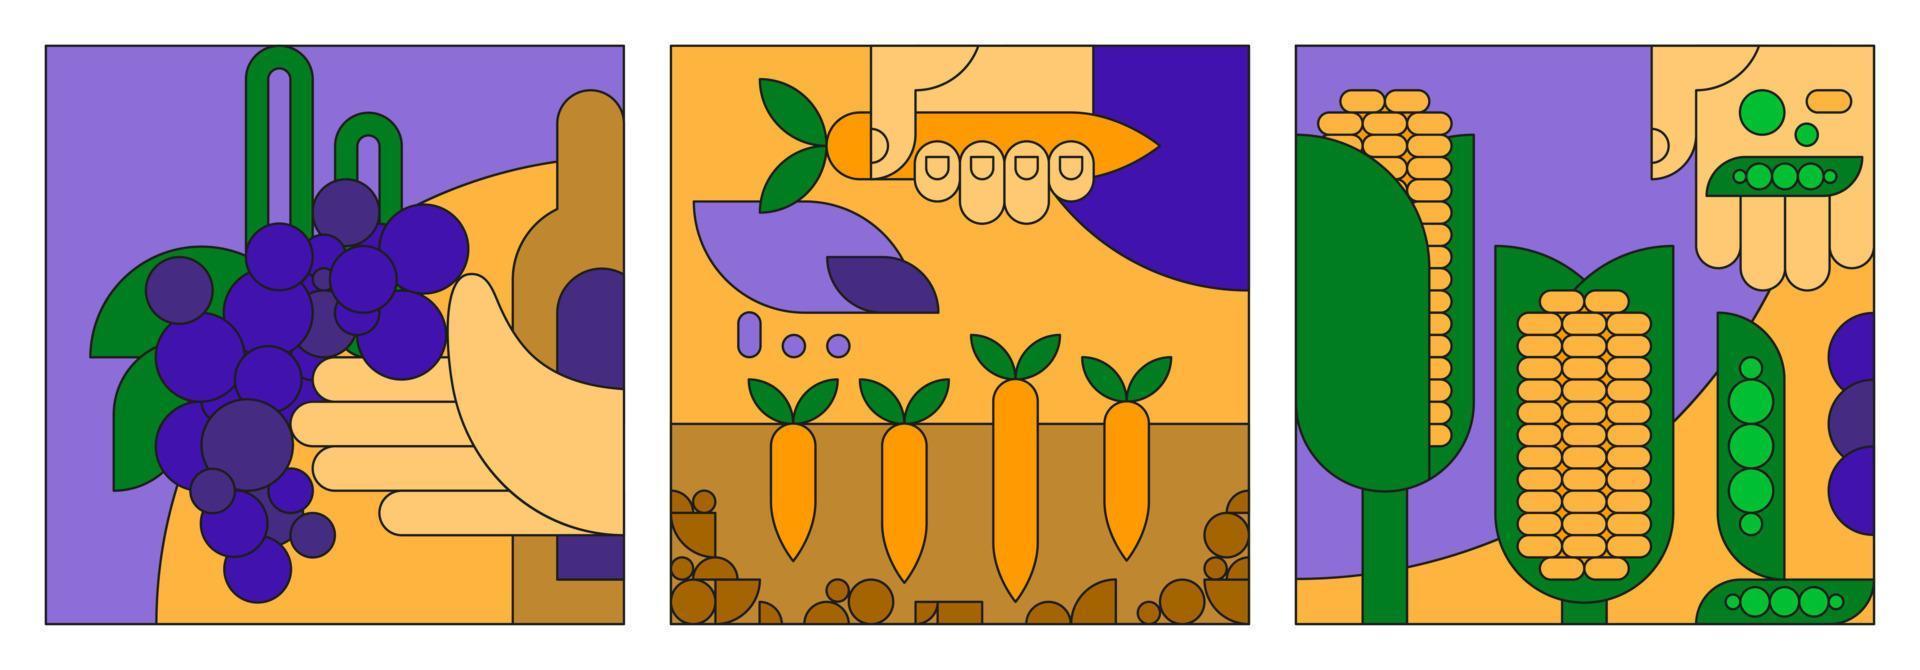 illustrazione piatta vettoriale sul tema dell'agricoltura, dell'orto e della viticoltura. simbolo stilizzato di mais, piselli, carote e uva, icona per l'agricoltura. raccolto in mano, cibo sano